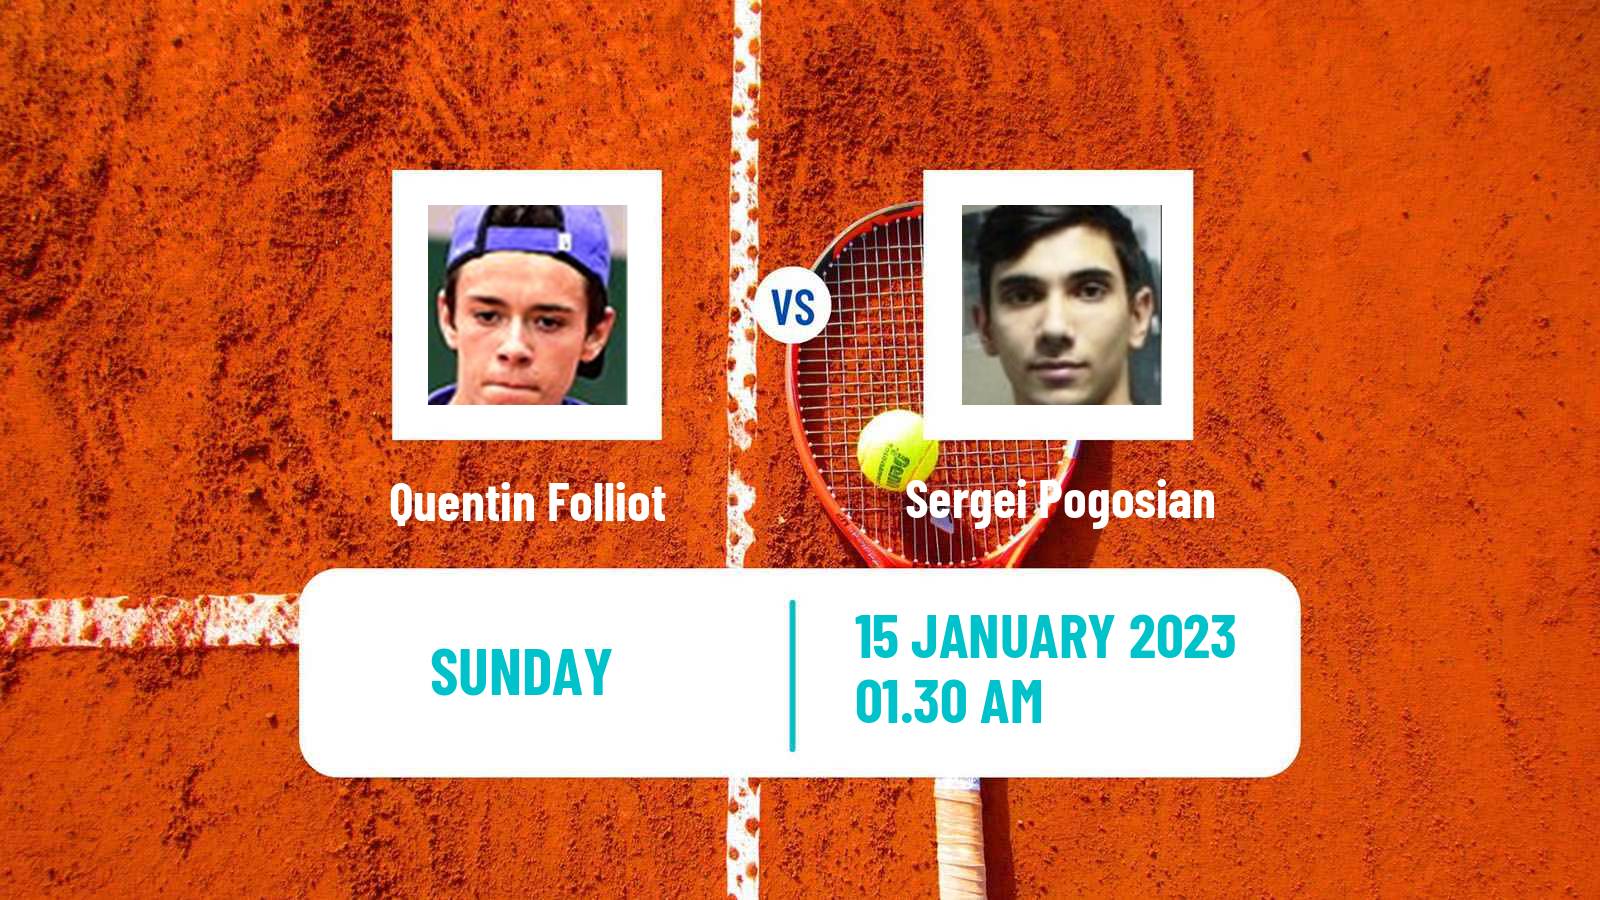 Tennis ITF Tournaments Quentin Folliot - Sergei Pogosian